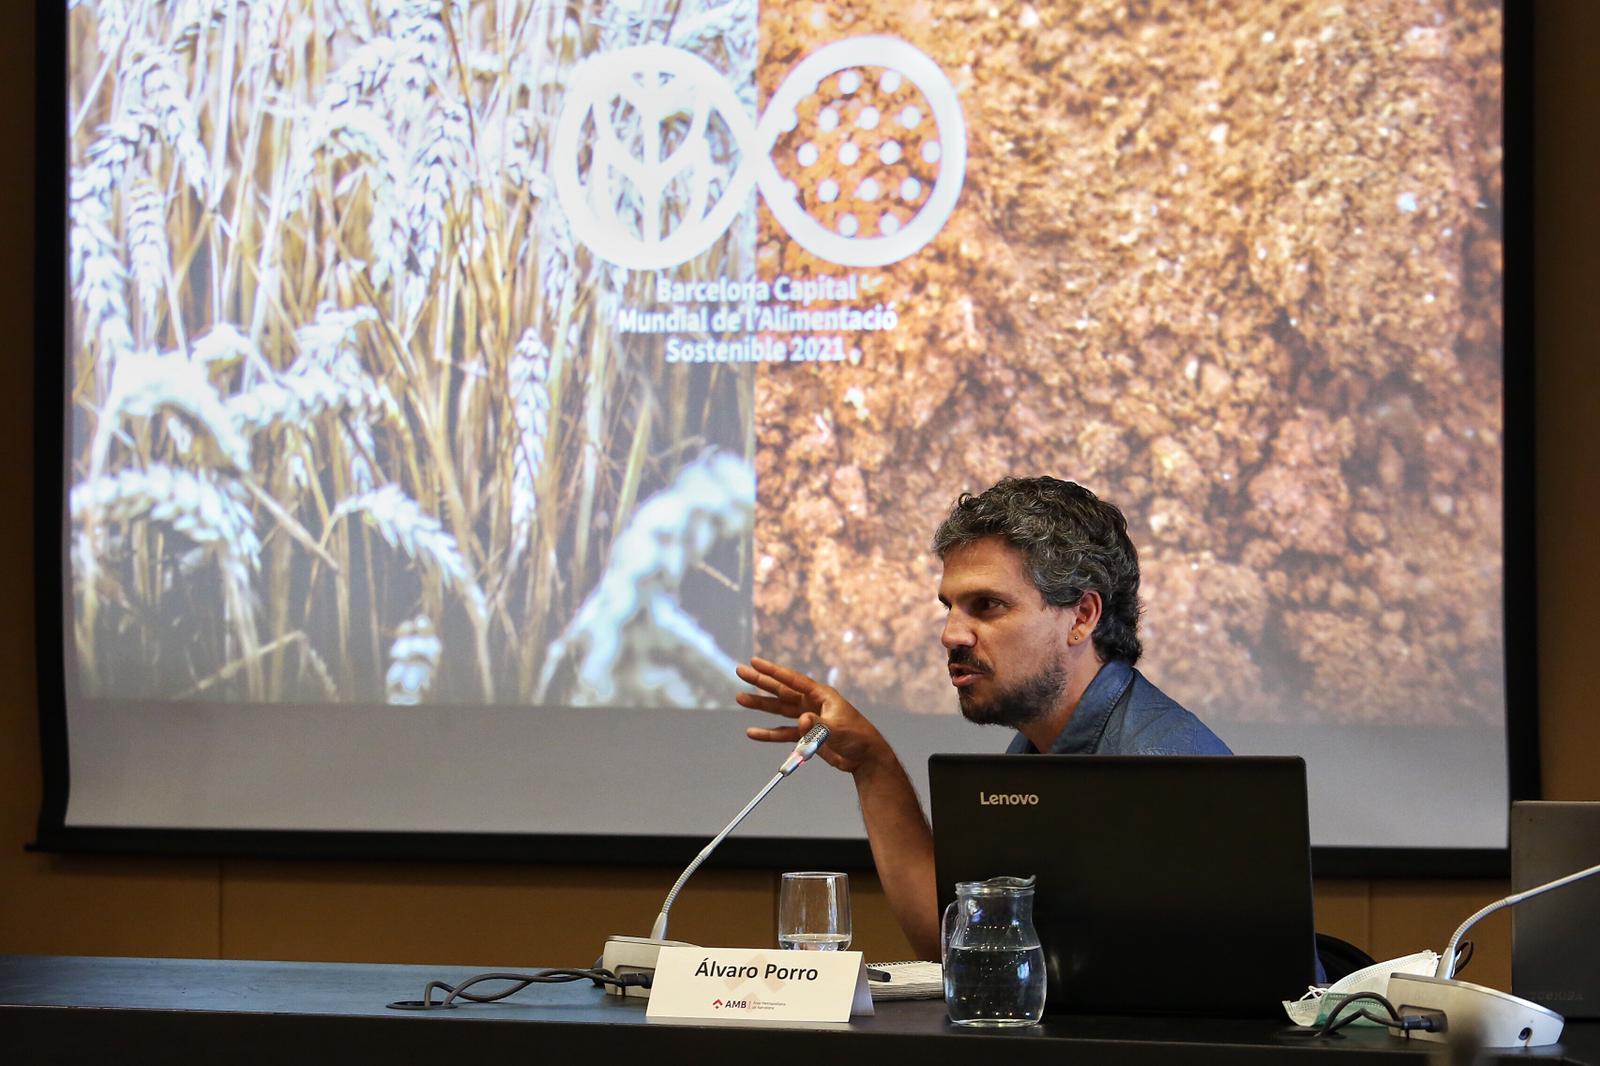 Álvaro Porro, comissionat d'Economia Social i Solidària durant la presentació de la Capital Mundial de l'Alimentació Sostenible 2021. Foto: Pere Virigil